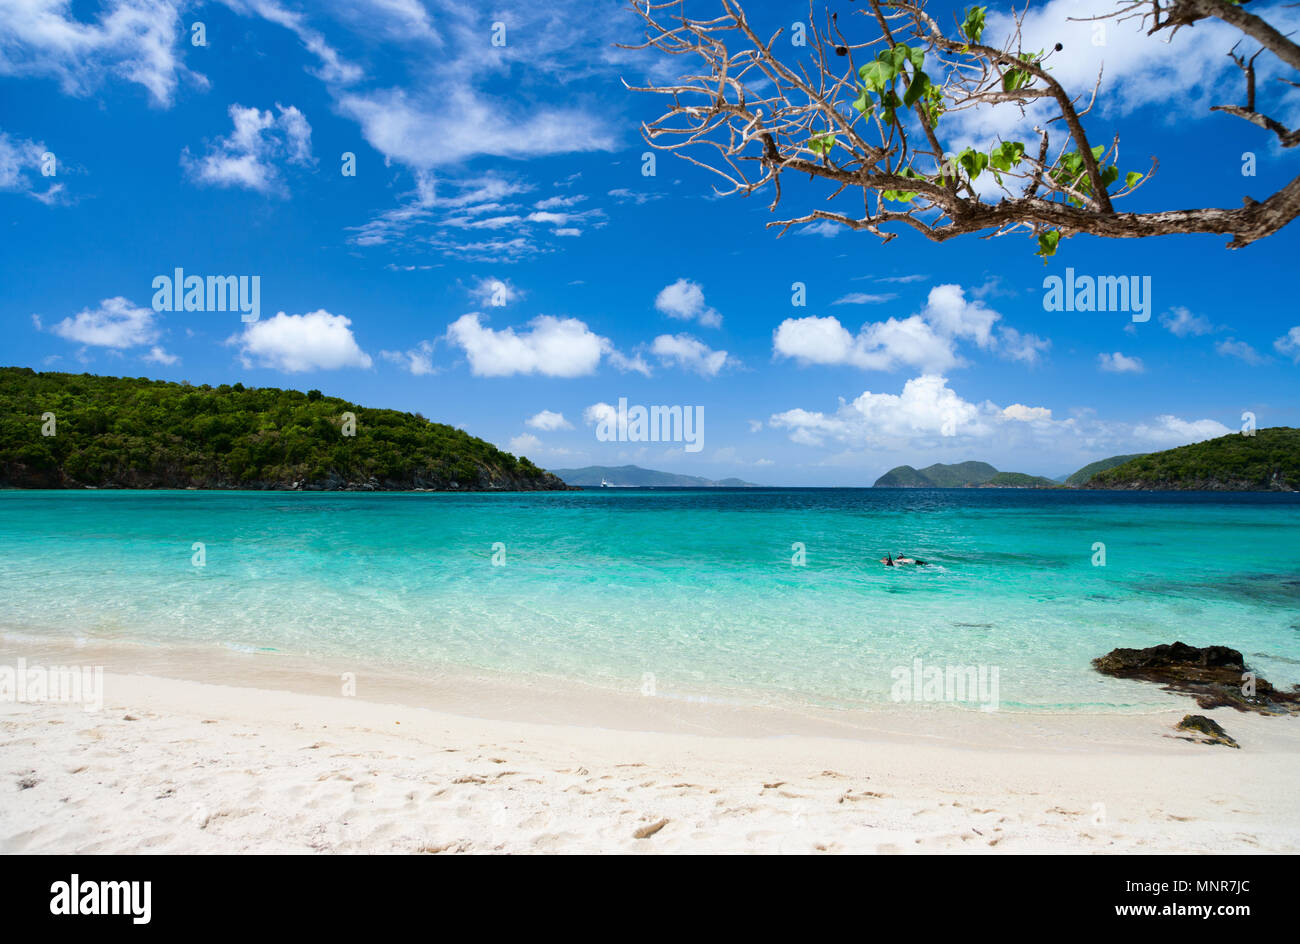 Hermosa playa tropical de arenas blancas, mar turquesa y azul cielo agua en St John, Islas Vírgenes de los Estados Unidos en el Caribe Foto de stock